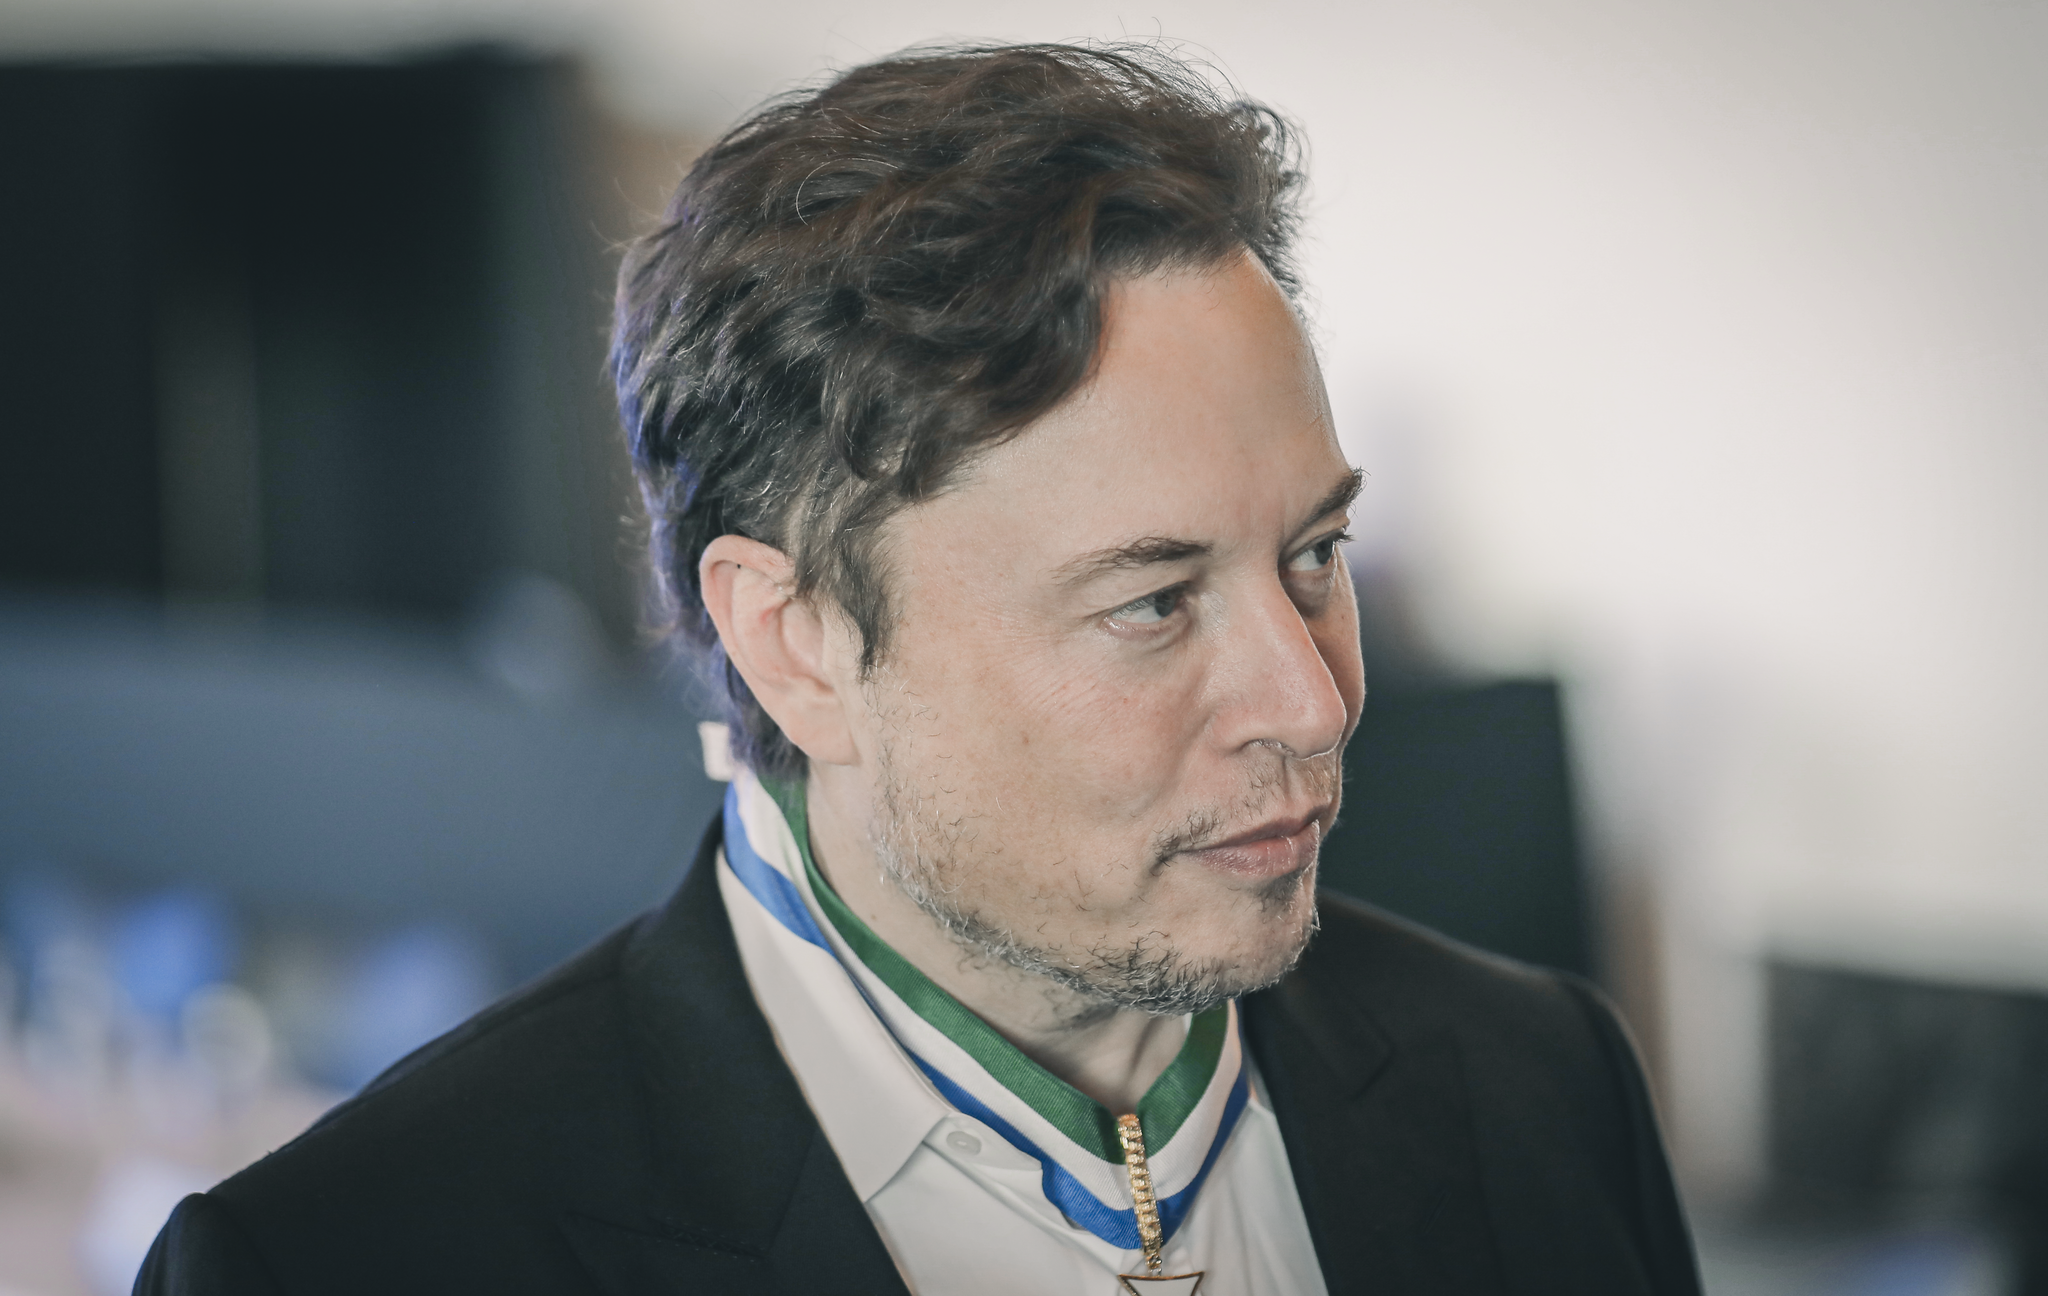 xAI, dirigé par Elon Musk, adopte une structure d’entreprise à but lucratif dans le but de faire du bien à la société